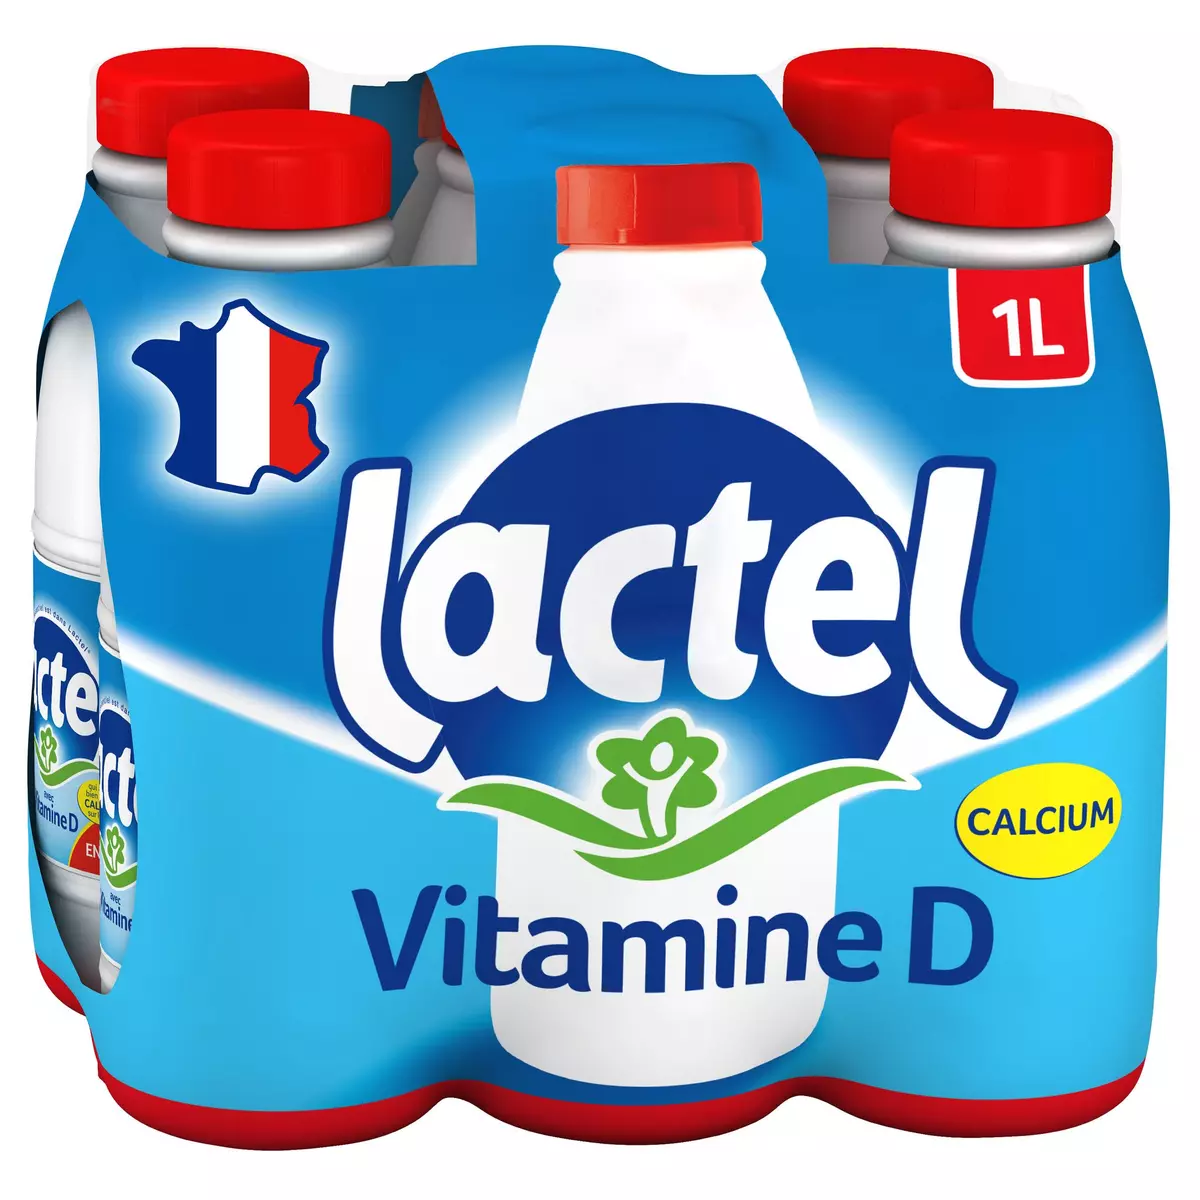 AUCHAN Auchan lait entier U.H.T. 6x1l pas cher 